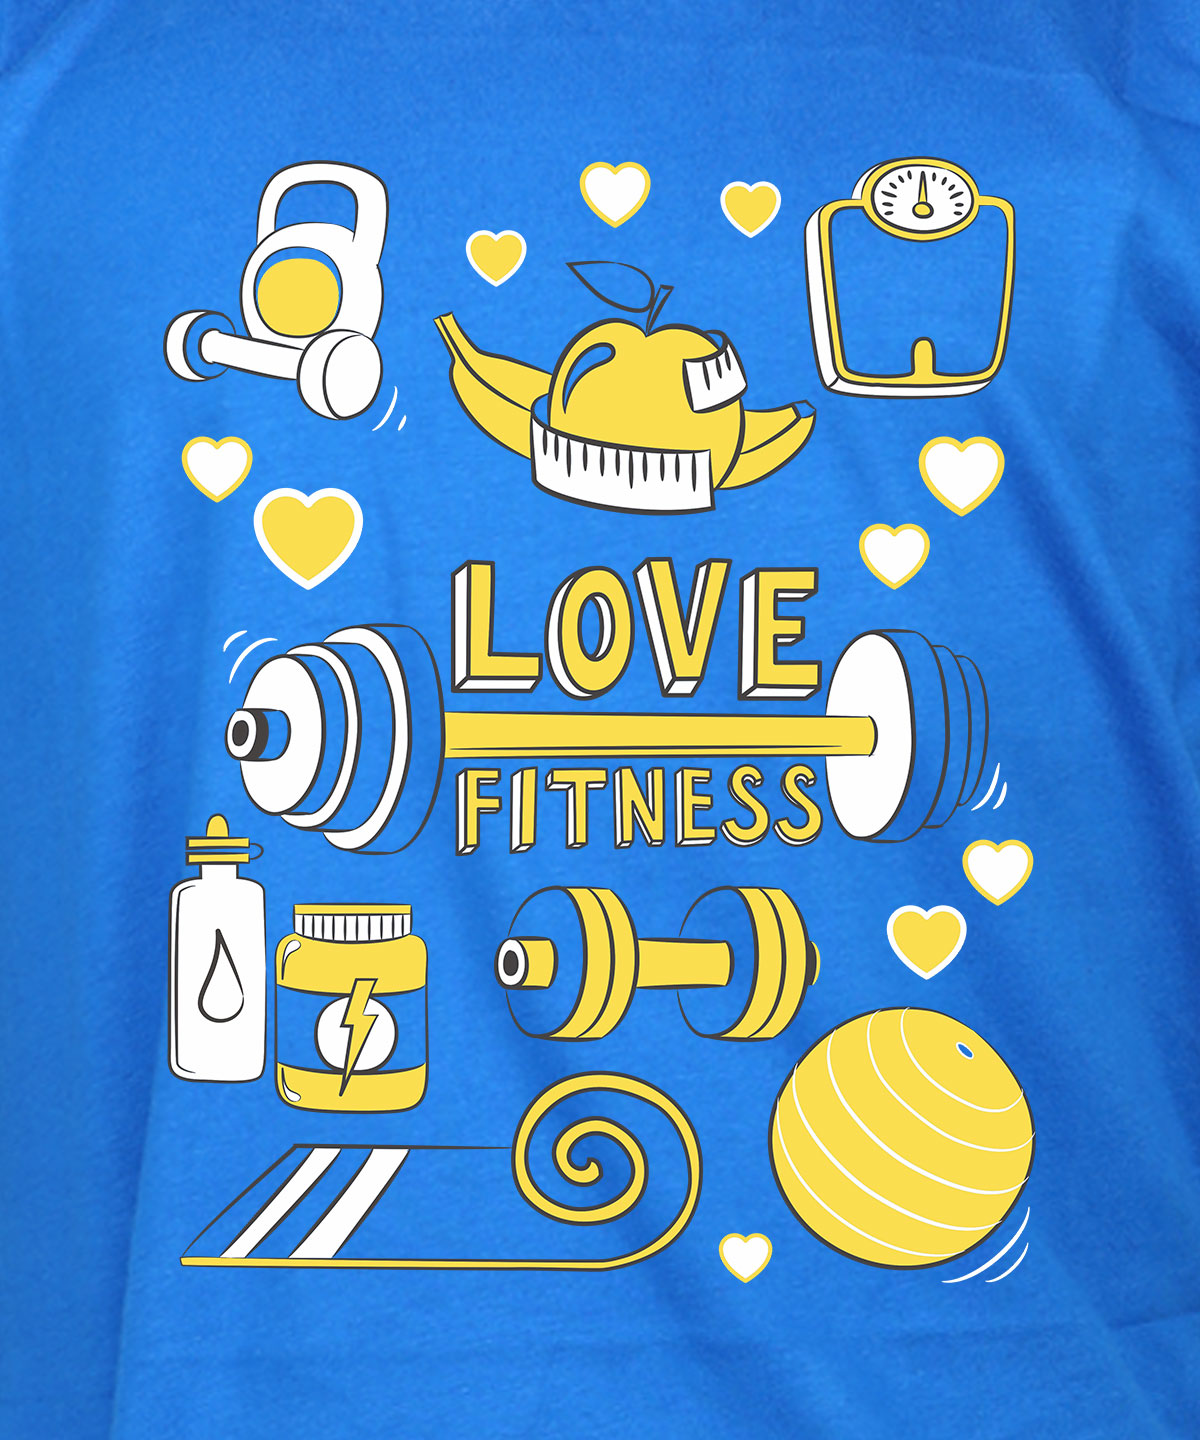 Love Fitness - Premium Round Neck Cotton Tees for Juniors - Electirc Blue